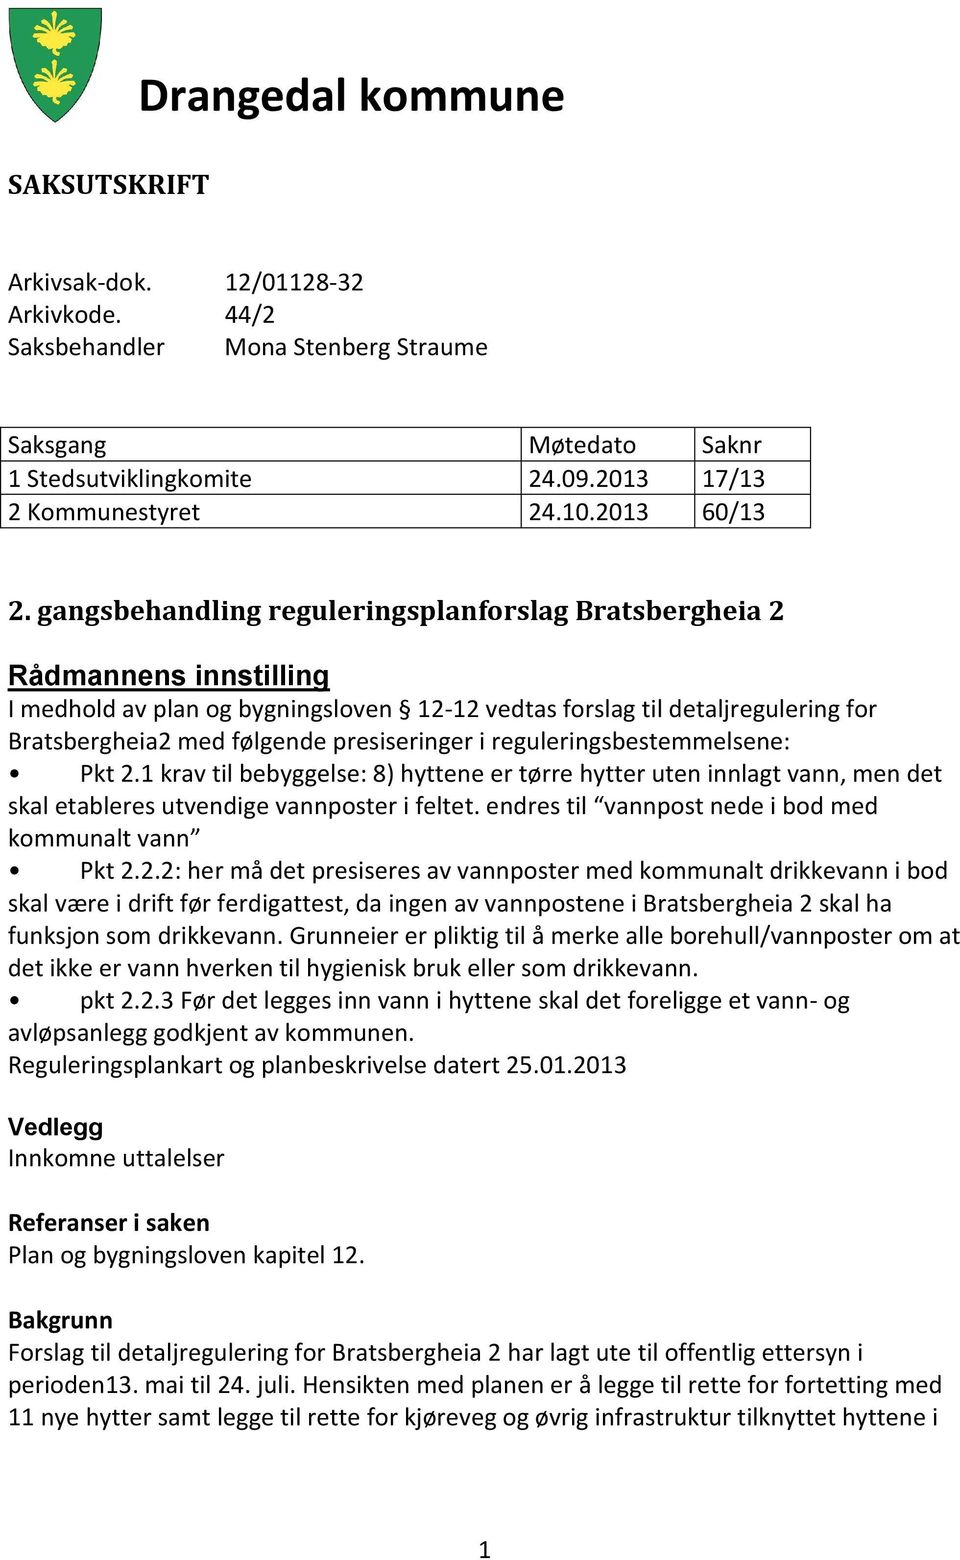 gangsbehandling reguleringsplanforslag Bratsbergheia 2 Rådmannens innstilling I medhold av plan og bygningsloven 12-12 vedtas forslag til detaljregulering for Bratsbergheia2 med følgende